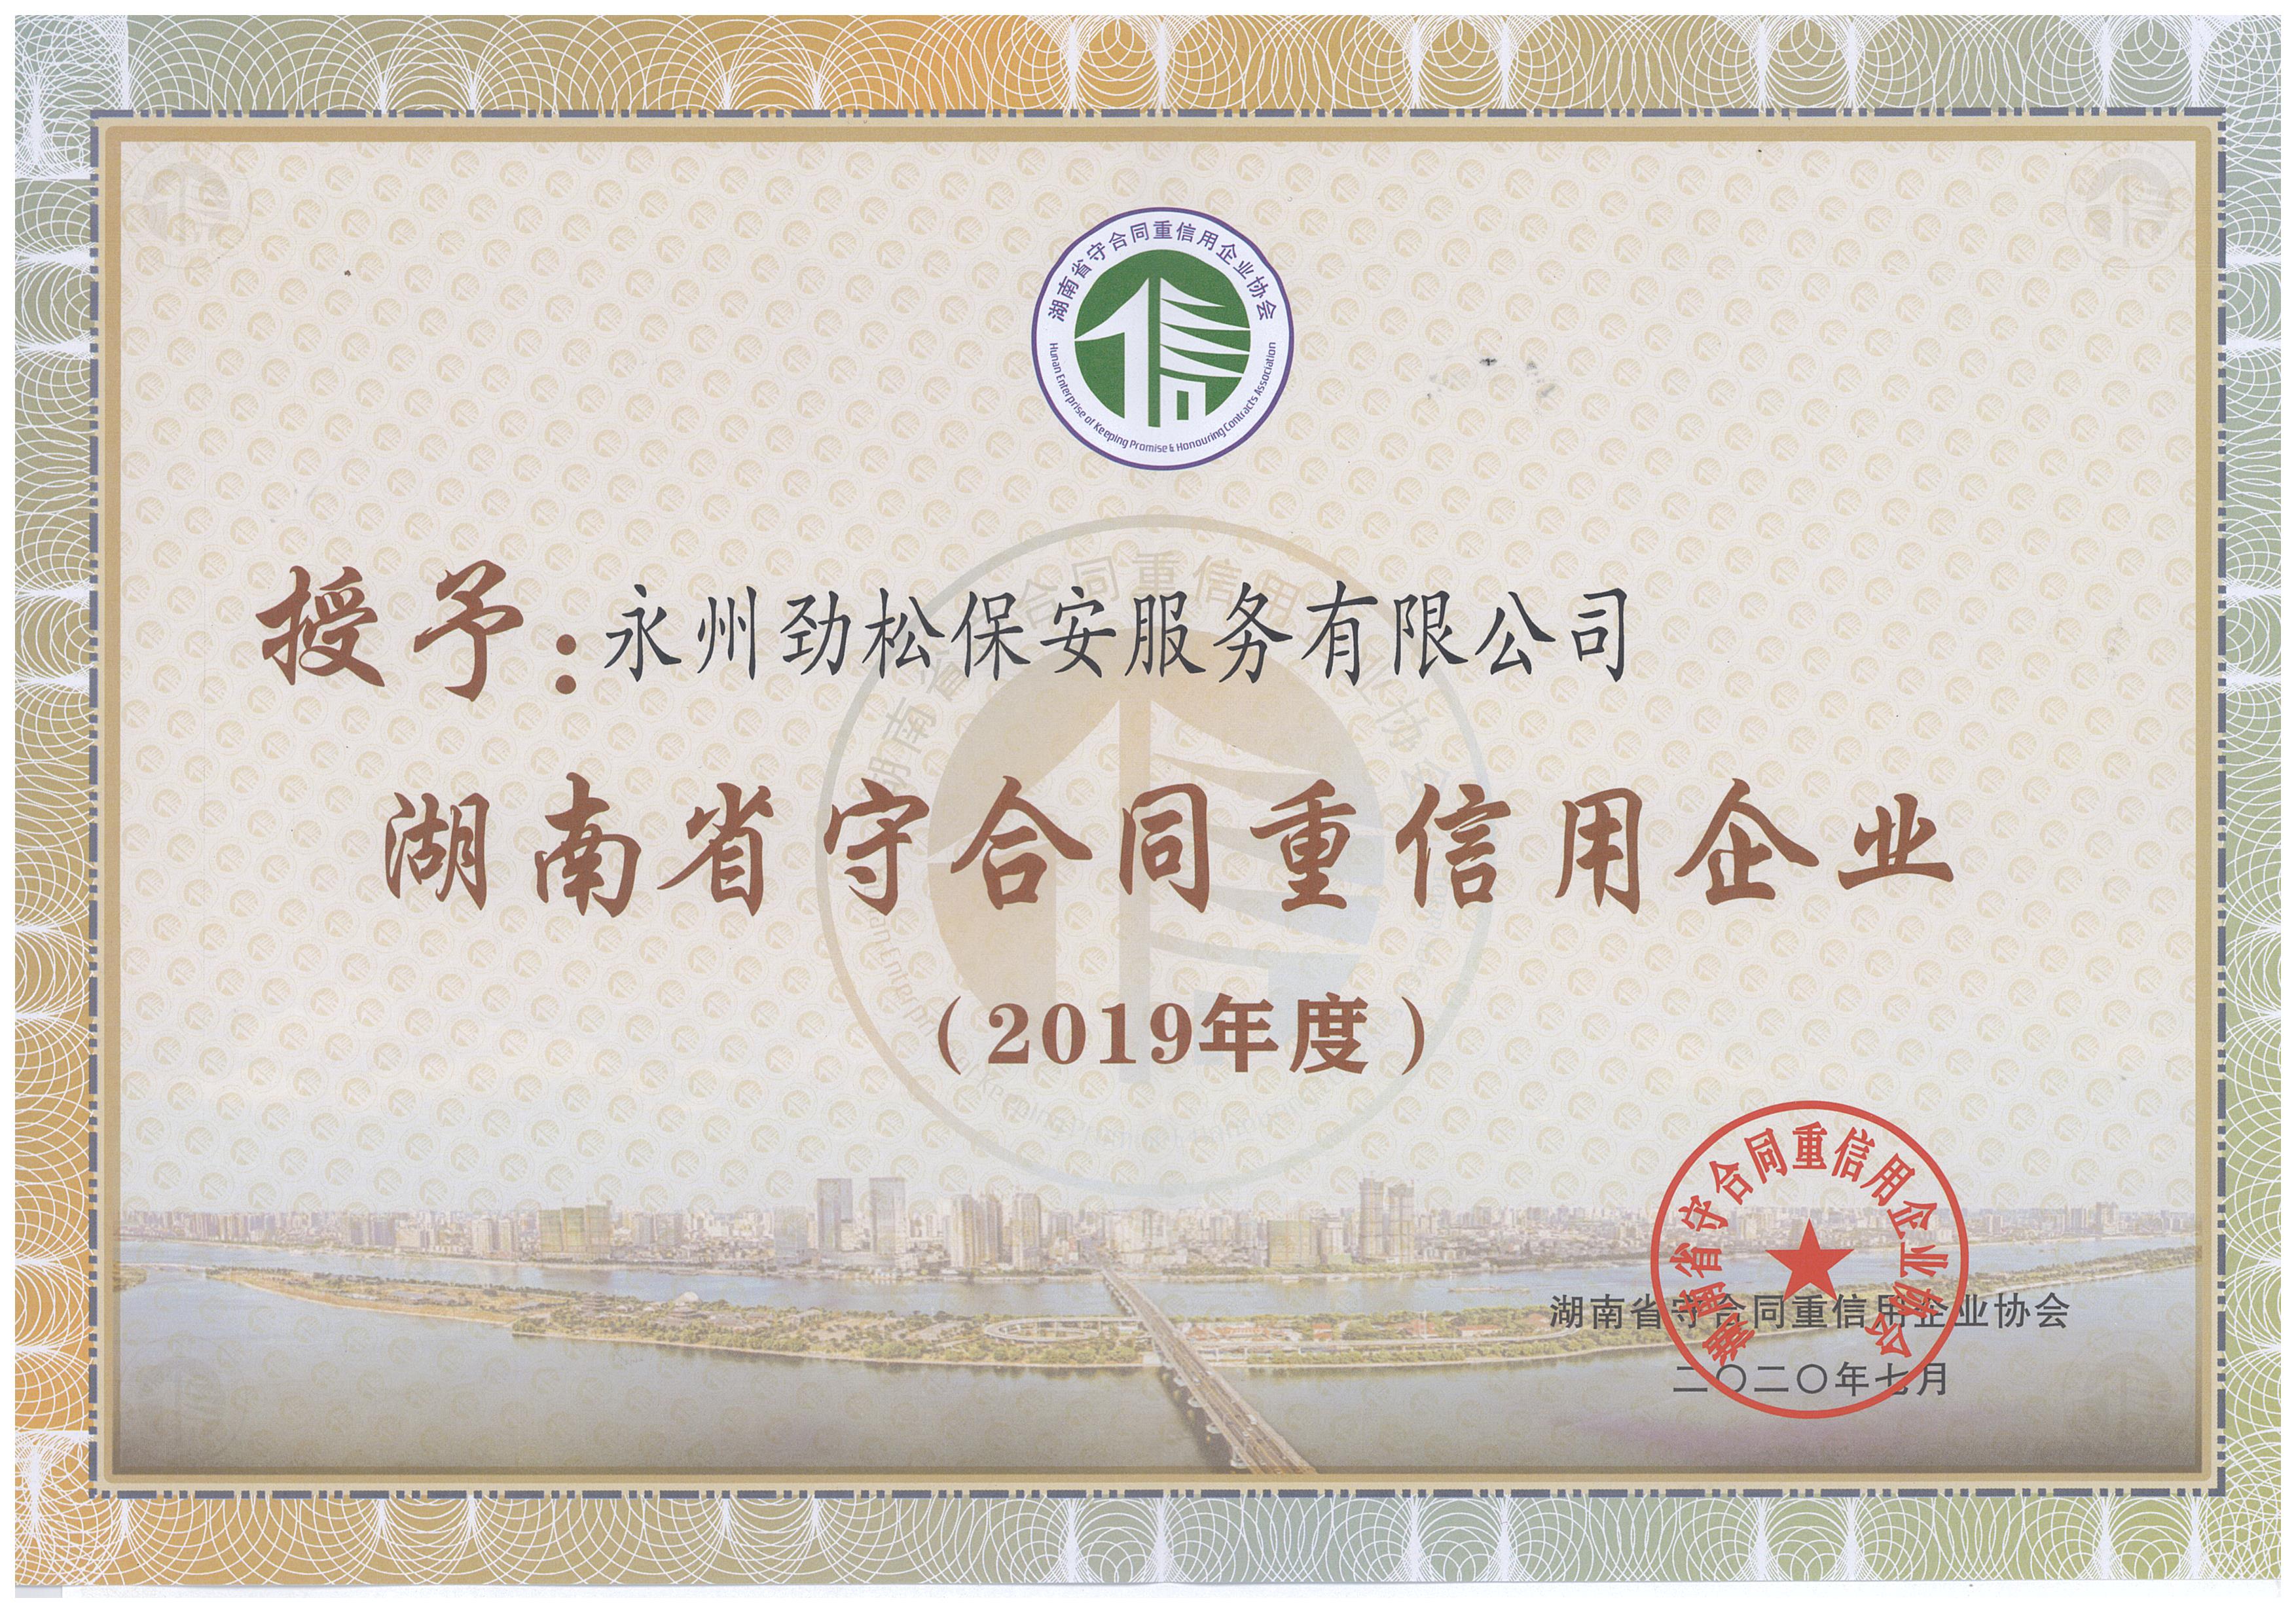 永州劲松保安服务有限公司荣获2019年“湖南省守合同重信用企业”称号